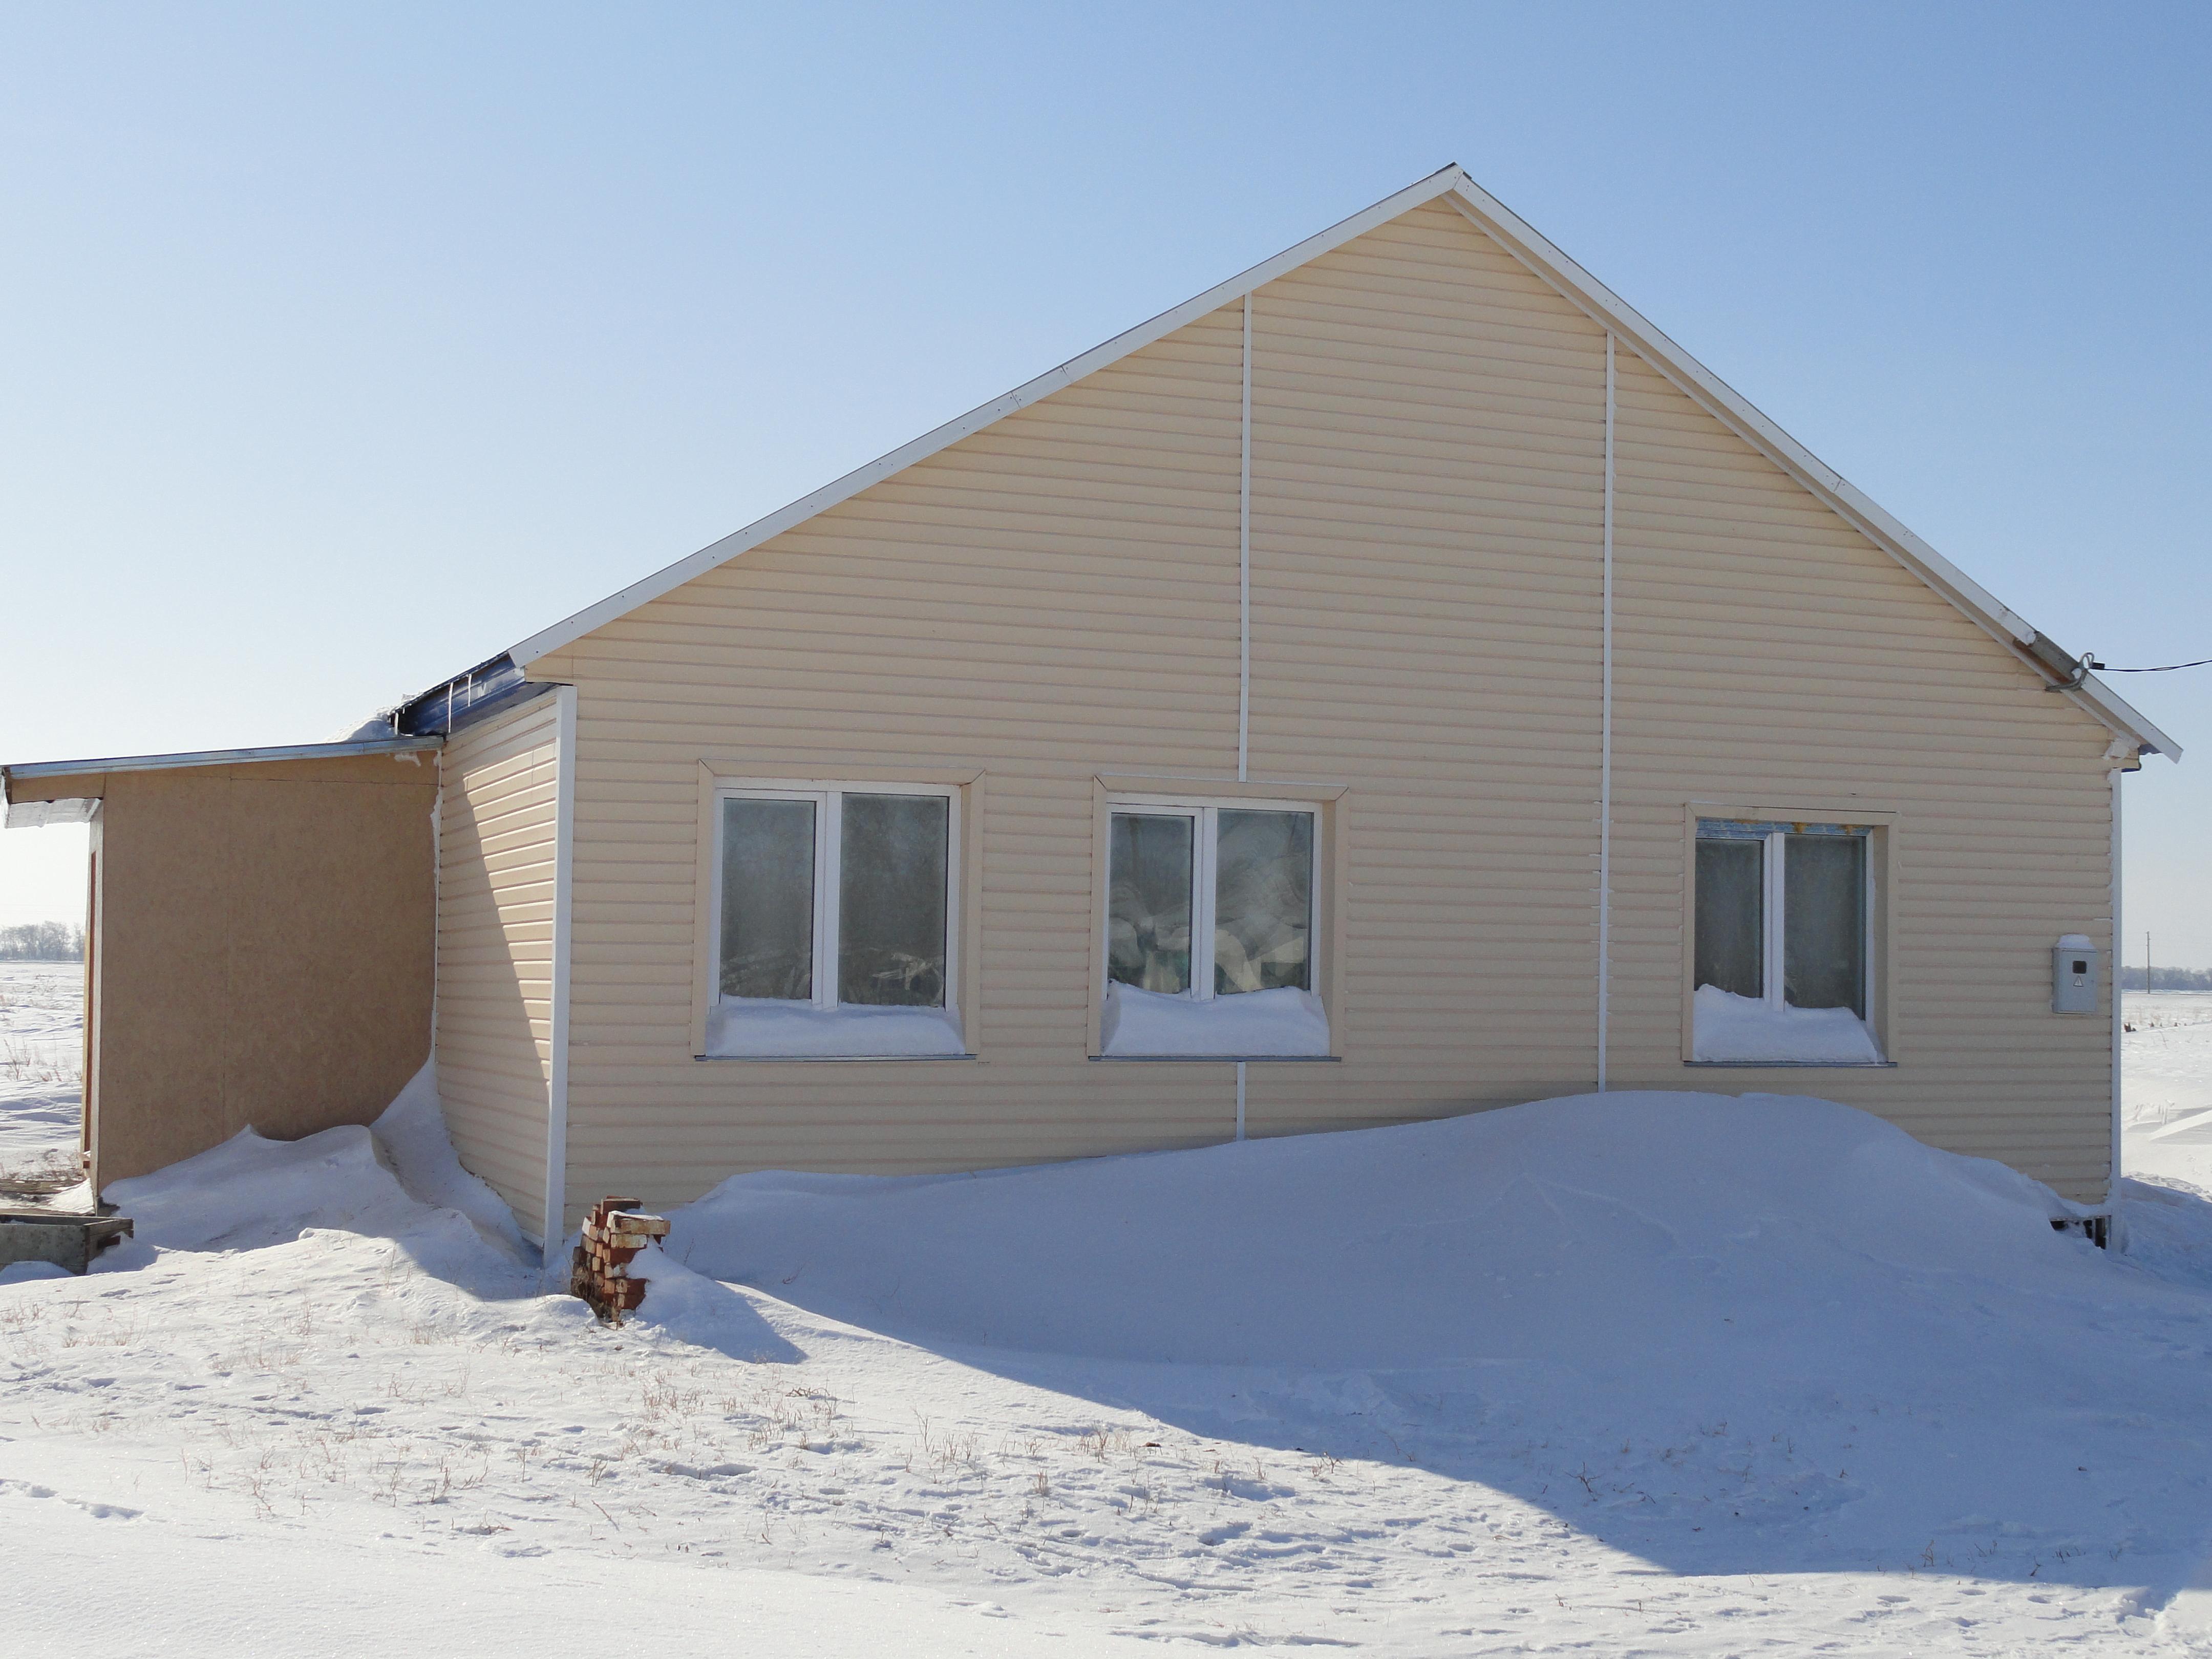 Самый новый дом в деревне, построен в 2010году для многодетной семьи Шиловых